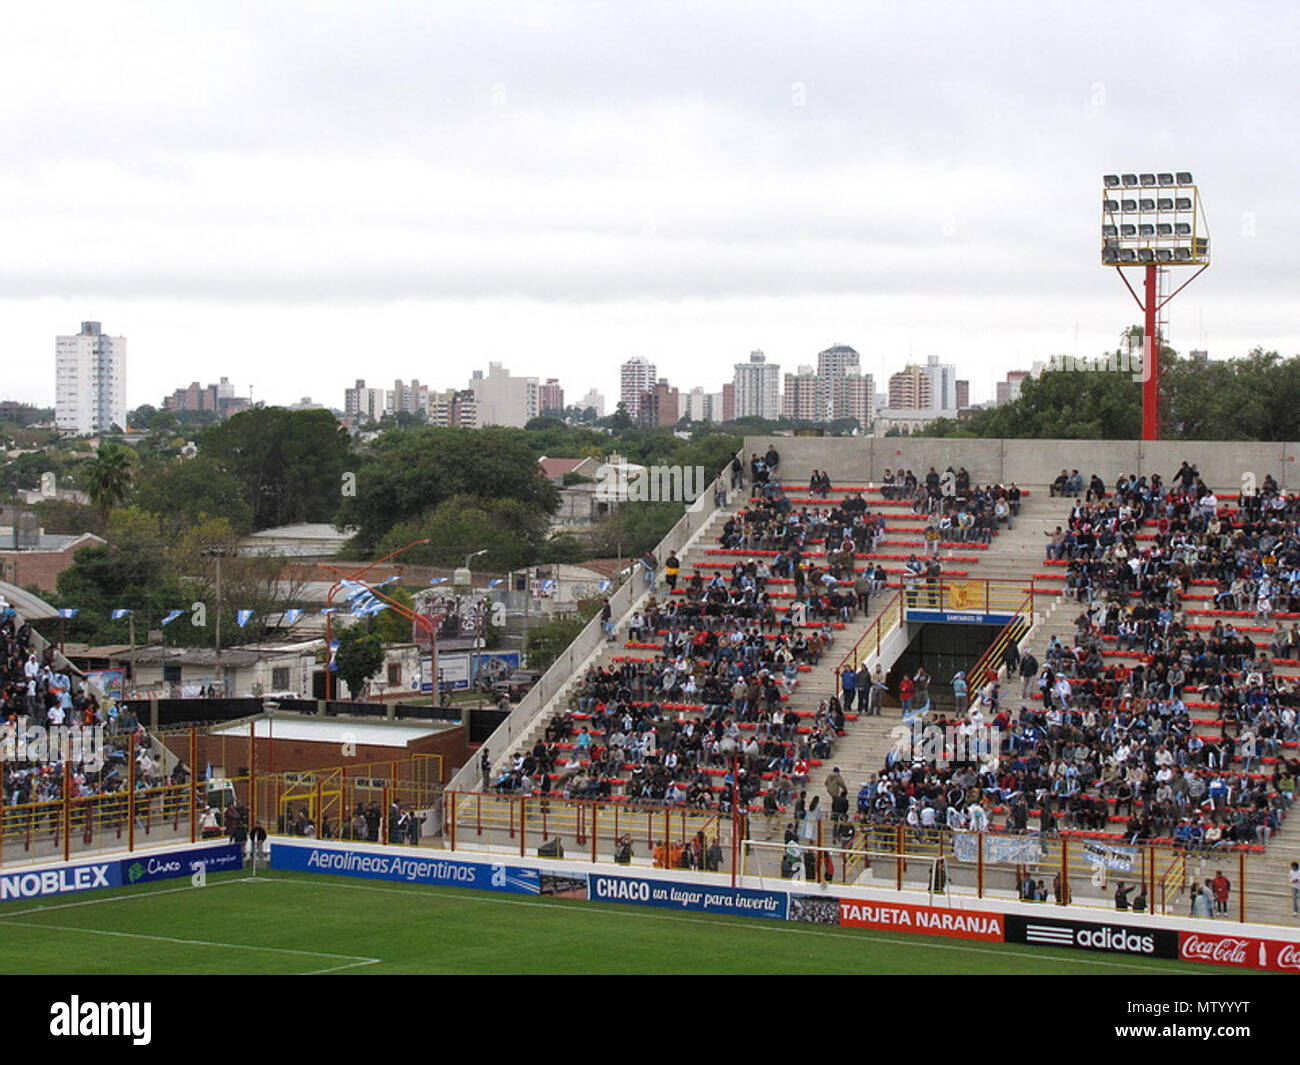 . Español: Skyline de la Ciudad de Resistencia, vista desde el estadio . 21 June 2011. wakazaki 543 Sarmiento03 Stock Photo